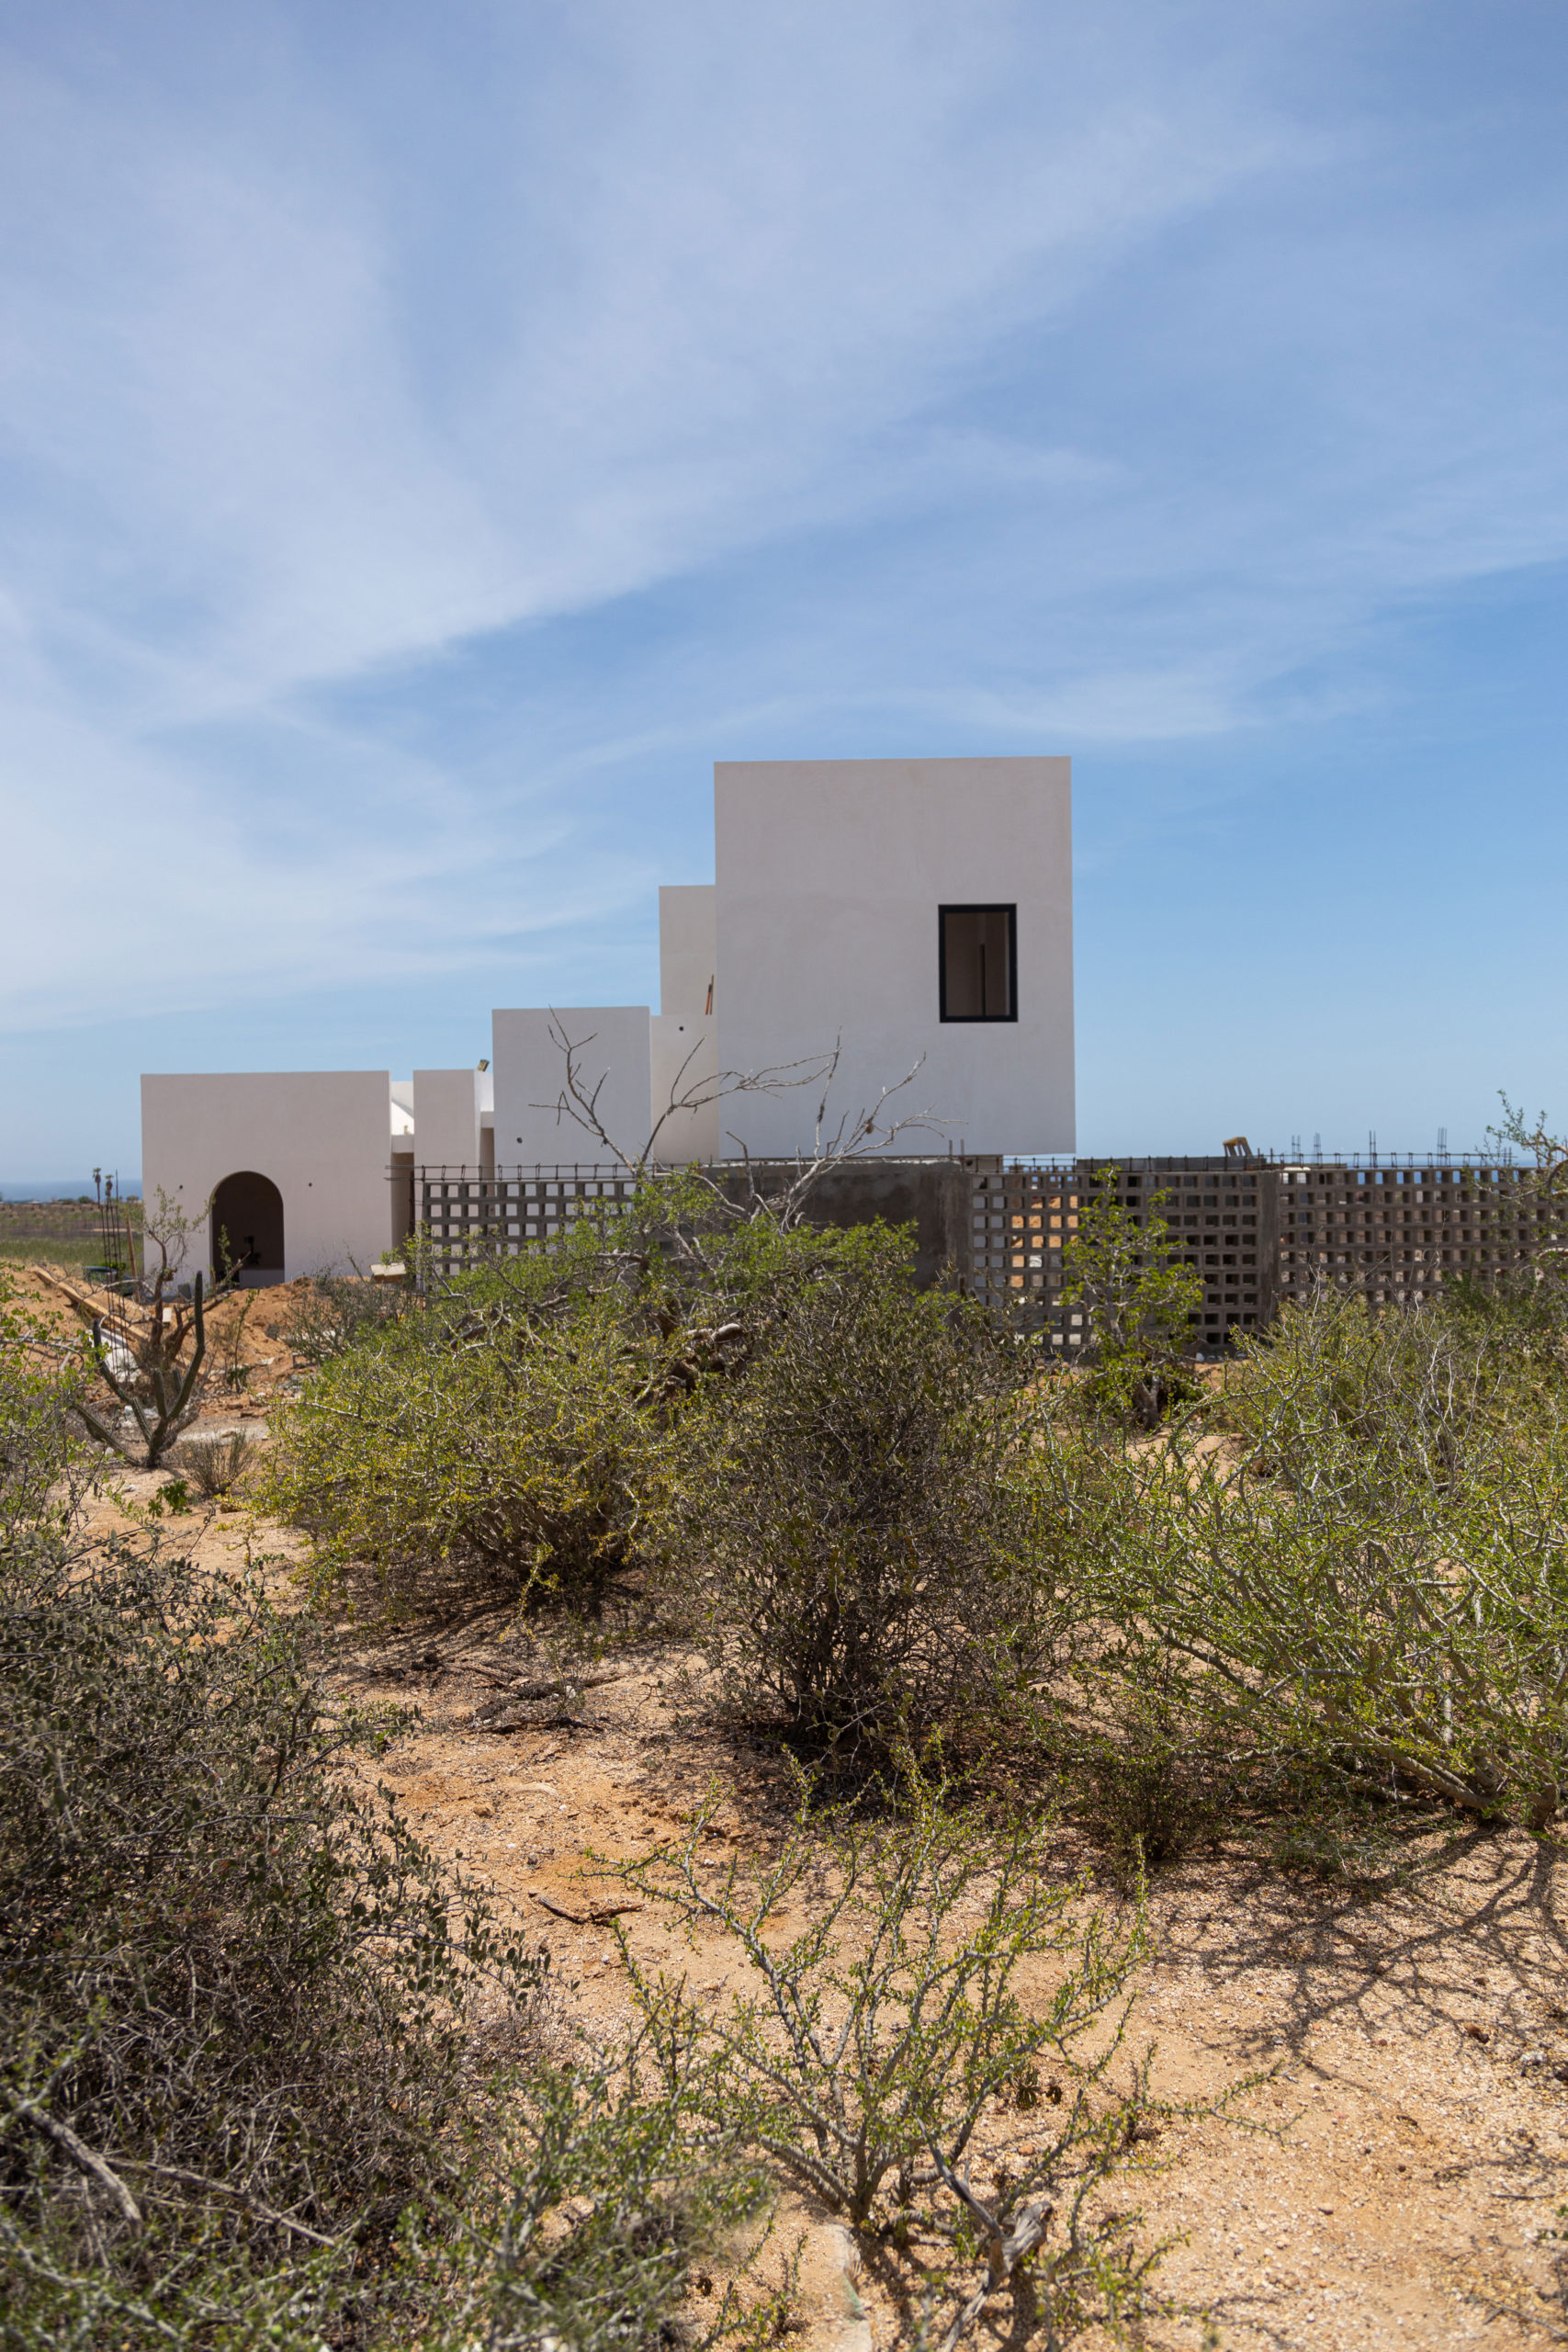 Villa BC, Todos Santos, Baja California Sur, Mexico. contemporary sustainable architecture by a10studio